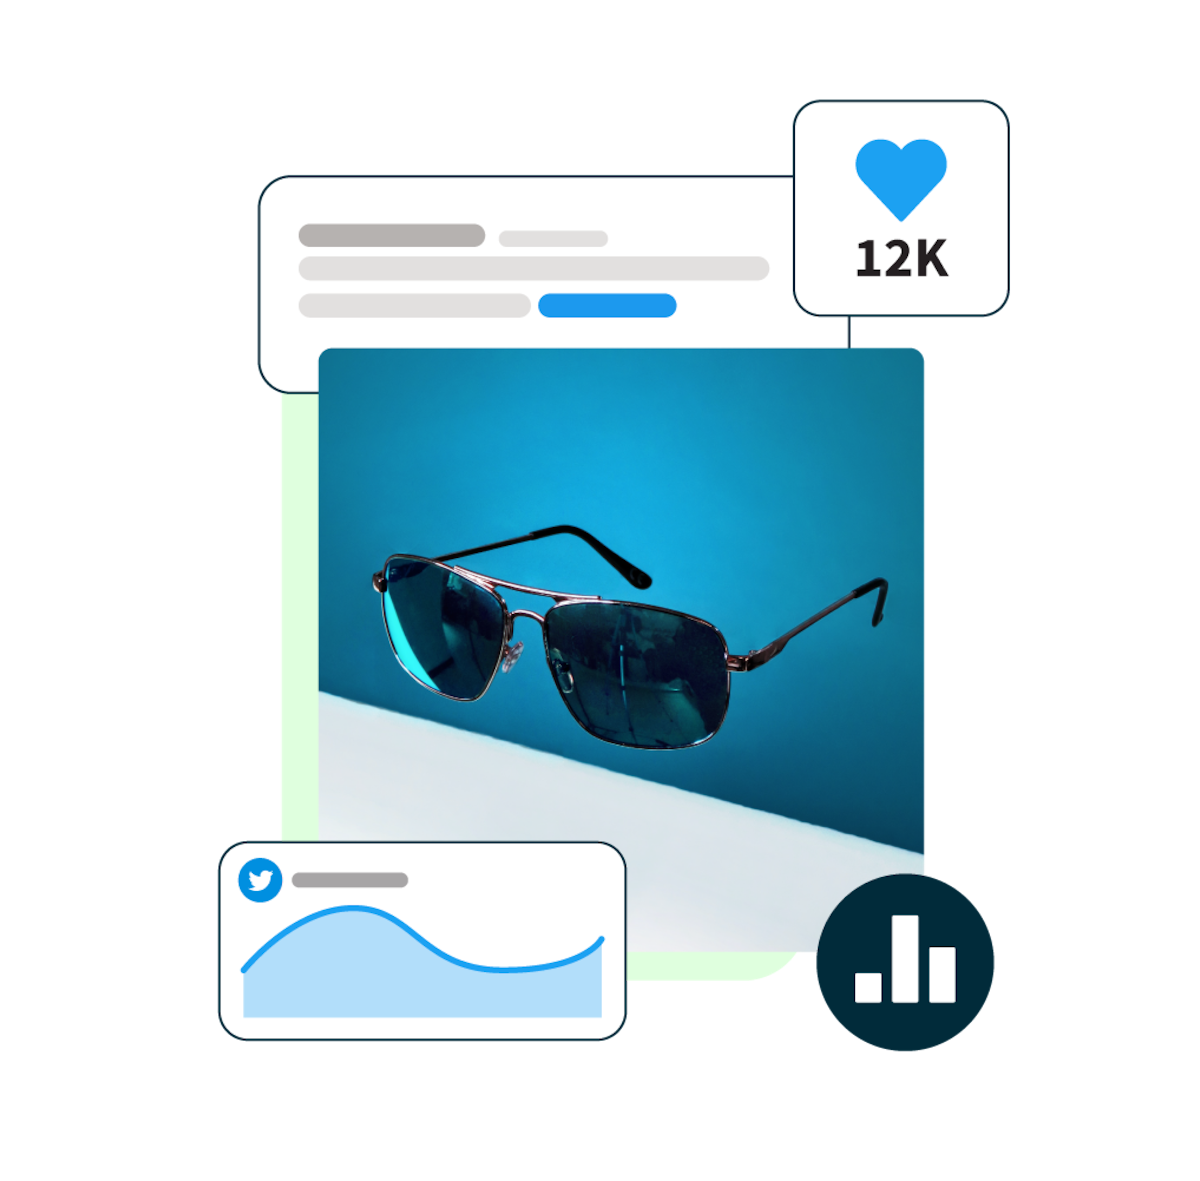 imagen de gafas de sol flotando con un fondo azul y ventanas emergentes de estadísticas de redes sociales a su alrededor